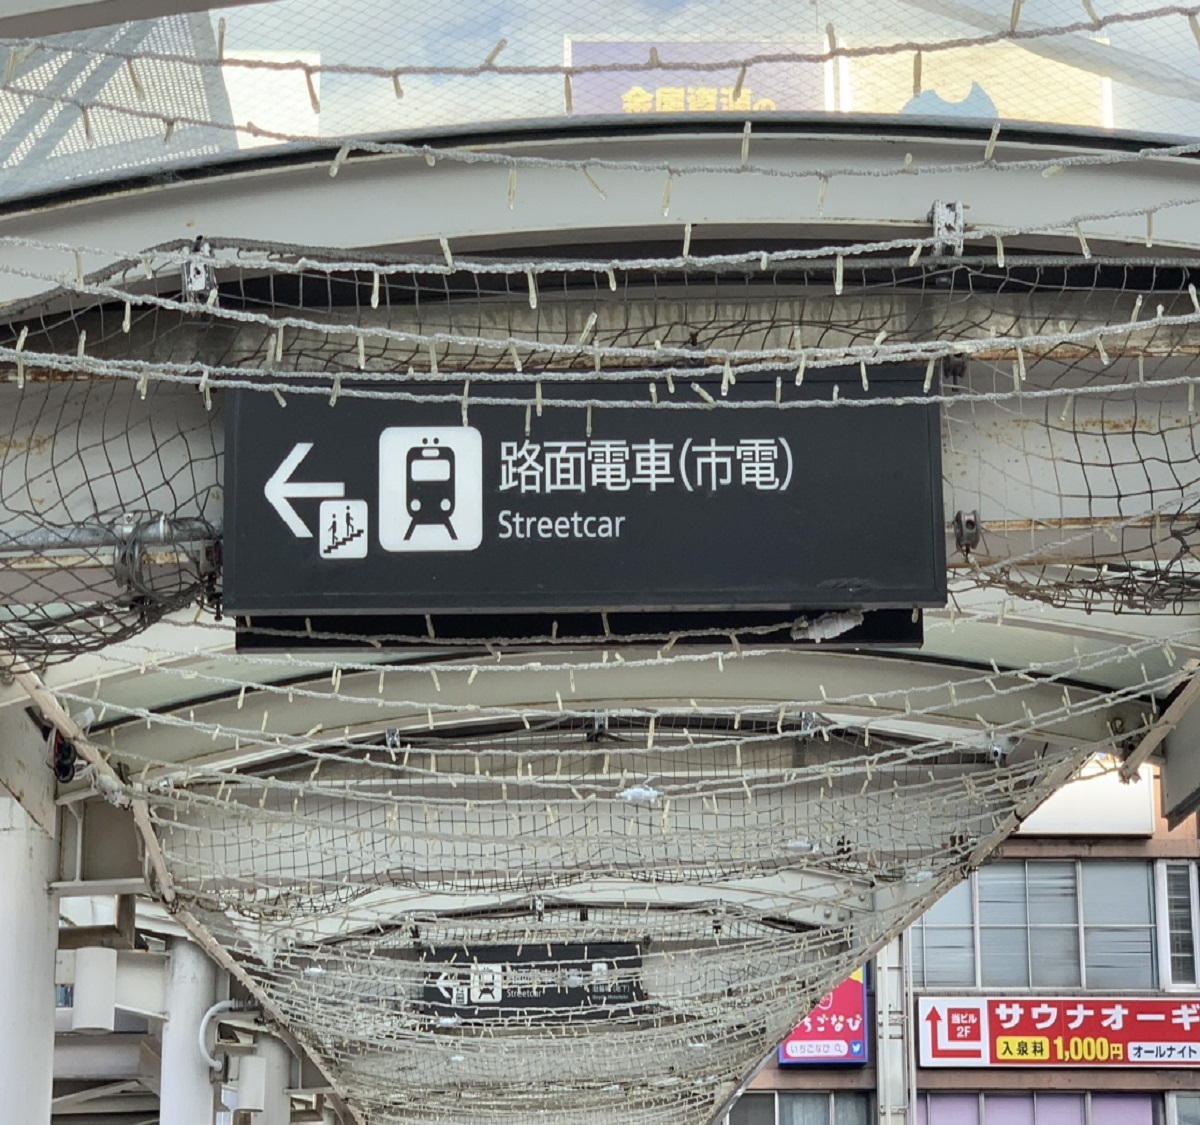 【路面電車の乗り方】❸路面電車(市電)の看板が見えましたら看板の矢印に沿ってお進みください。